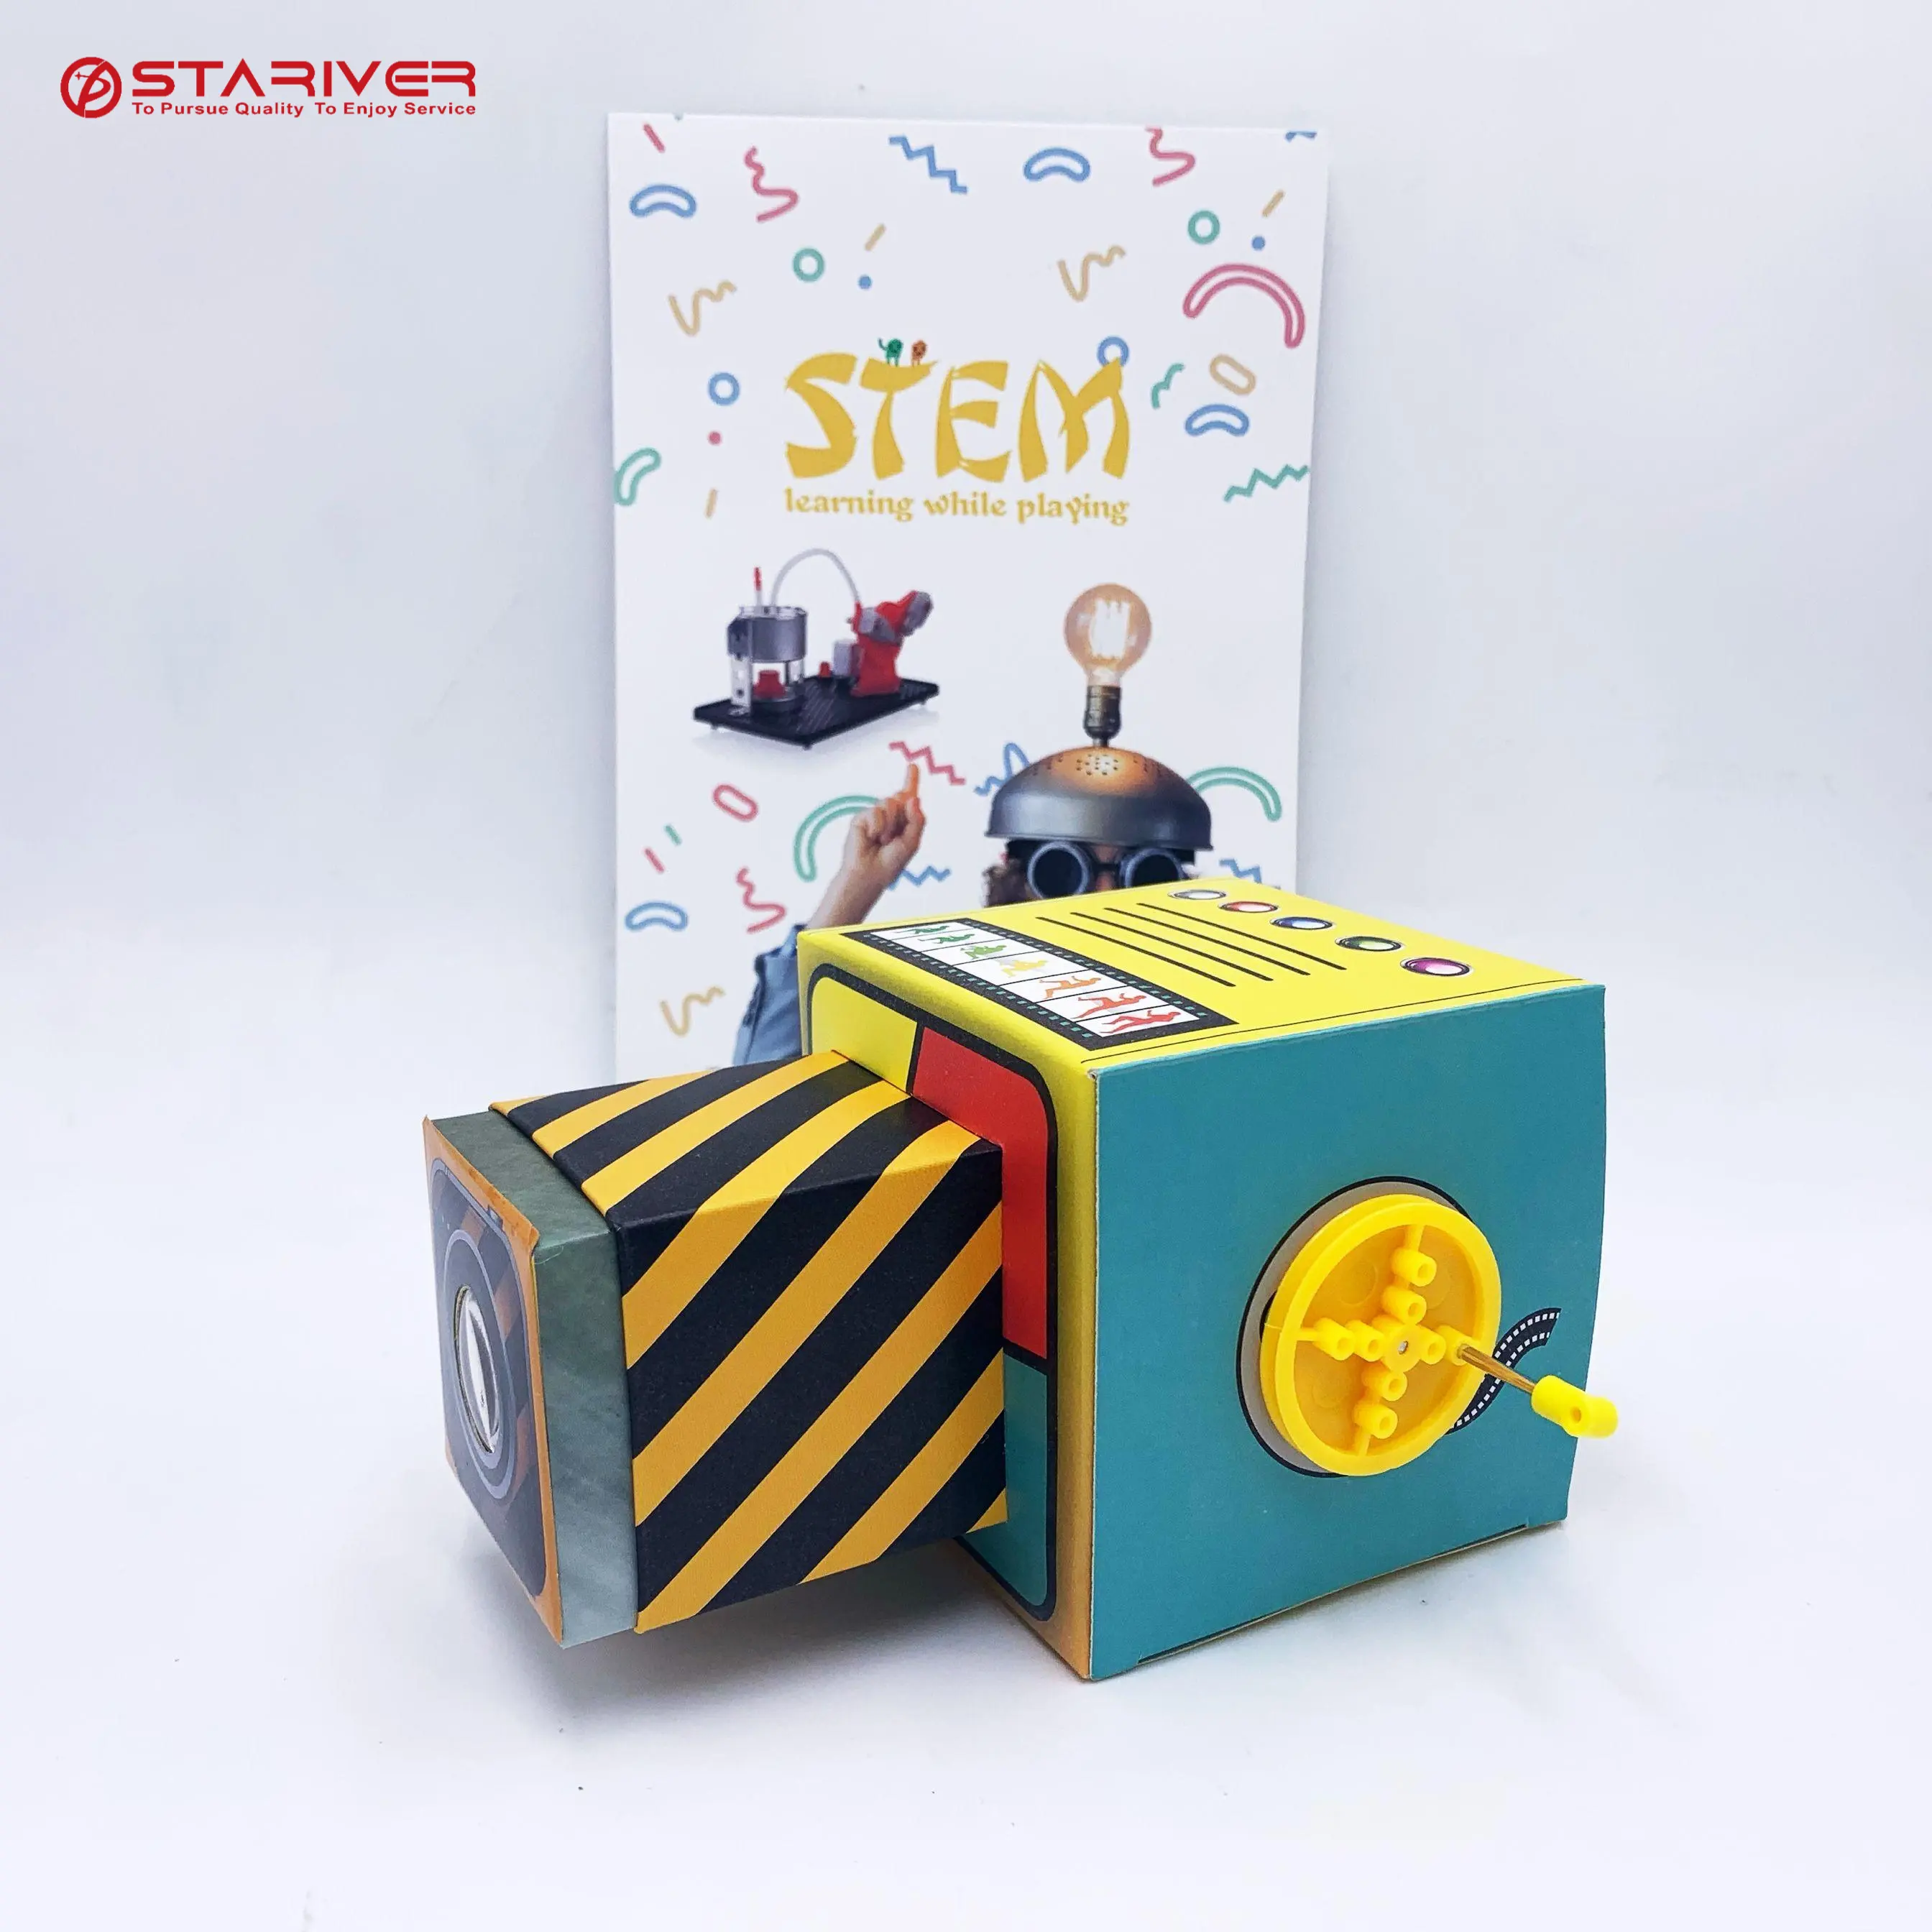 Stem activity kits proiettore per studenti e bambini progetto di fisica stem toys educational